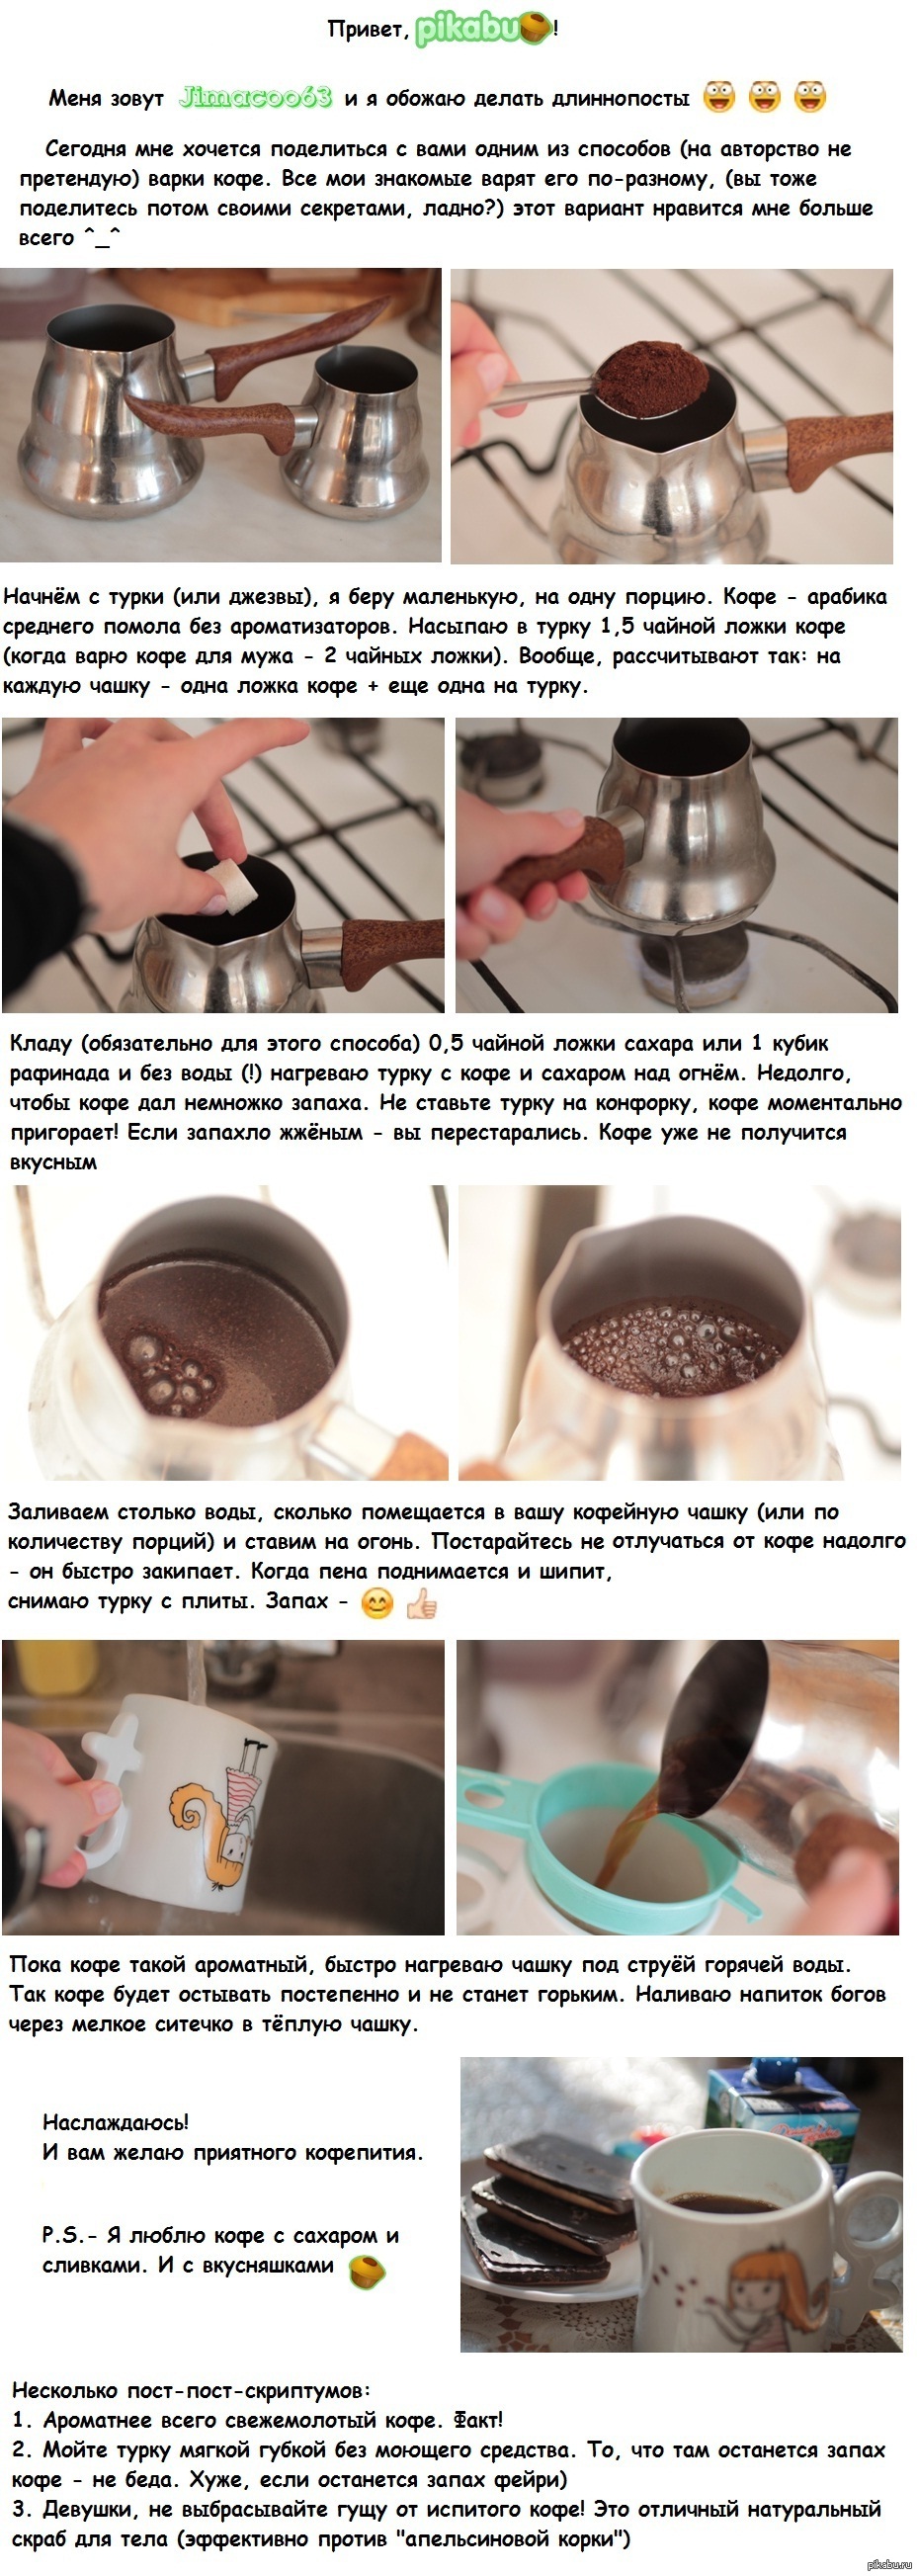 Кофе на литр воды. Кофе в турке. Кофе в турке пропорции кофе и воды. Приготовление кофе в турке. Как варить кофе.